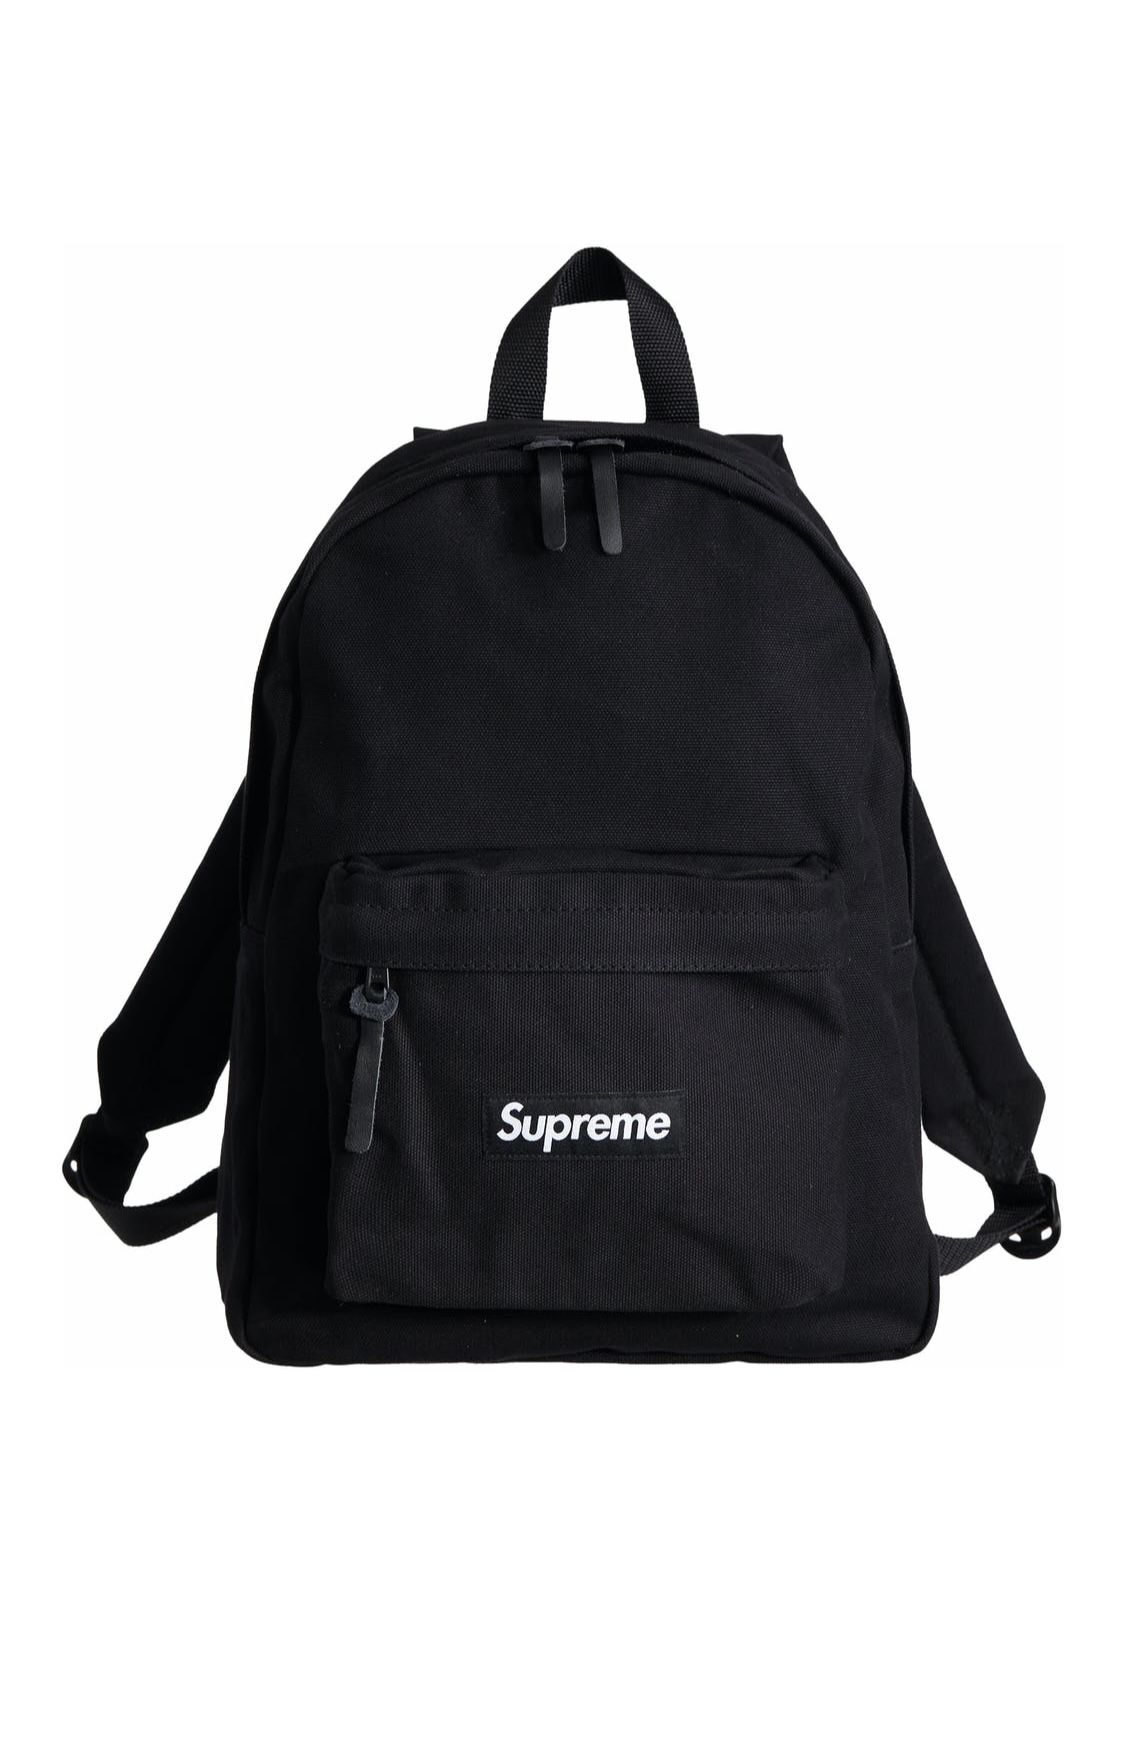 Supreme Canvas Backpack - Black